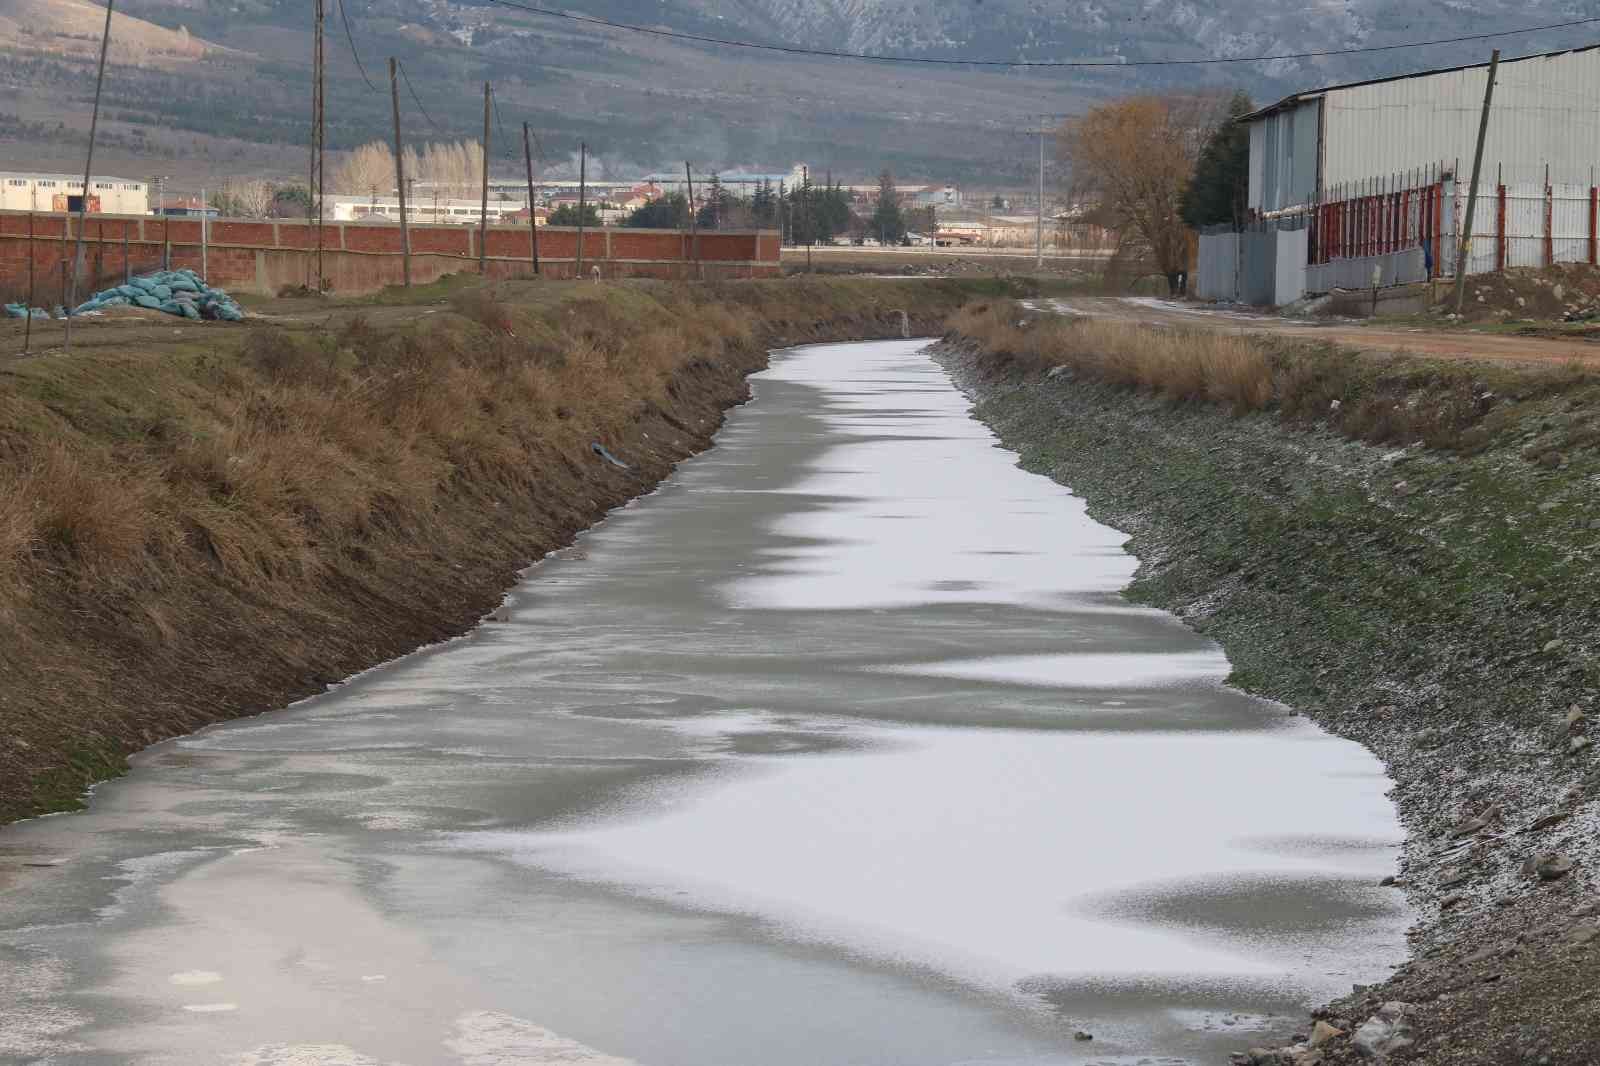 Eskişehir’de soğuk hava sulama kanalını dondurdu #eskisehir